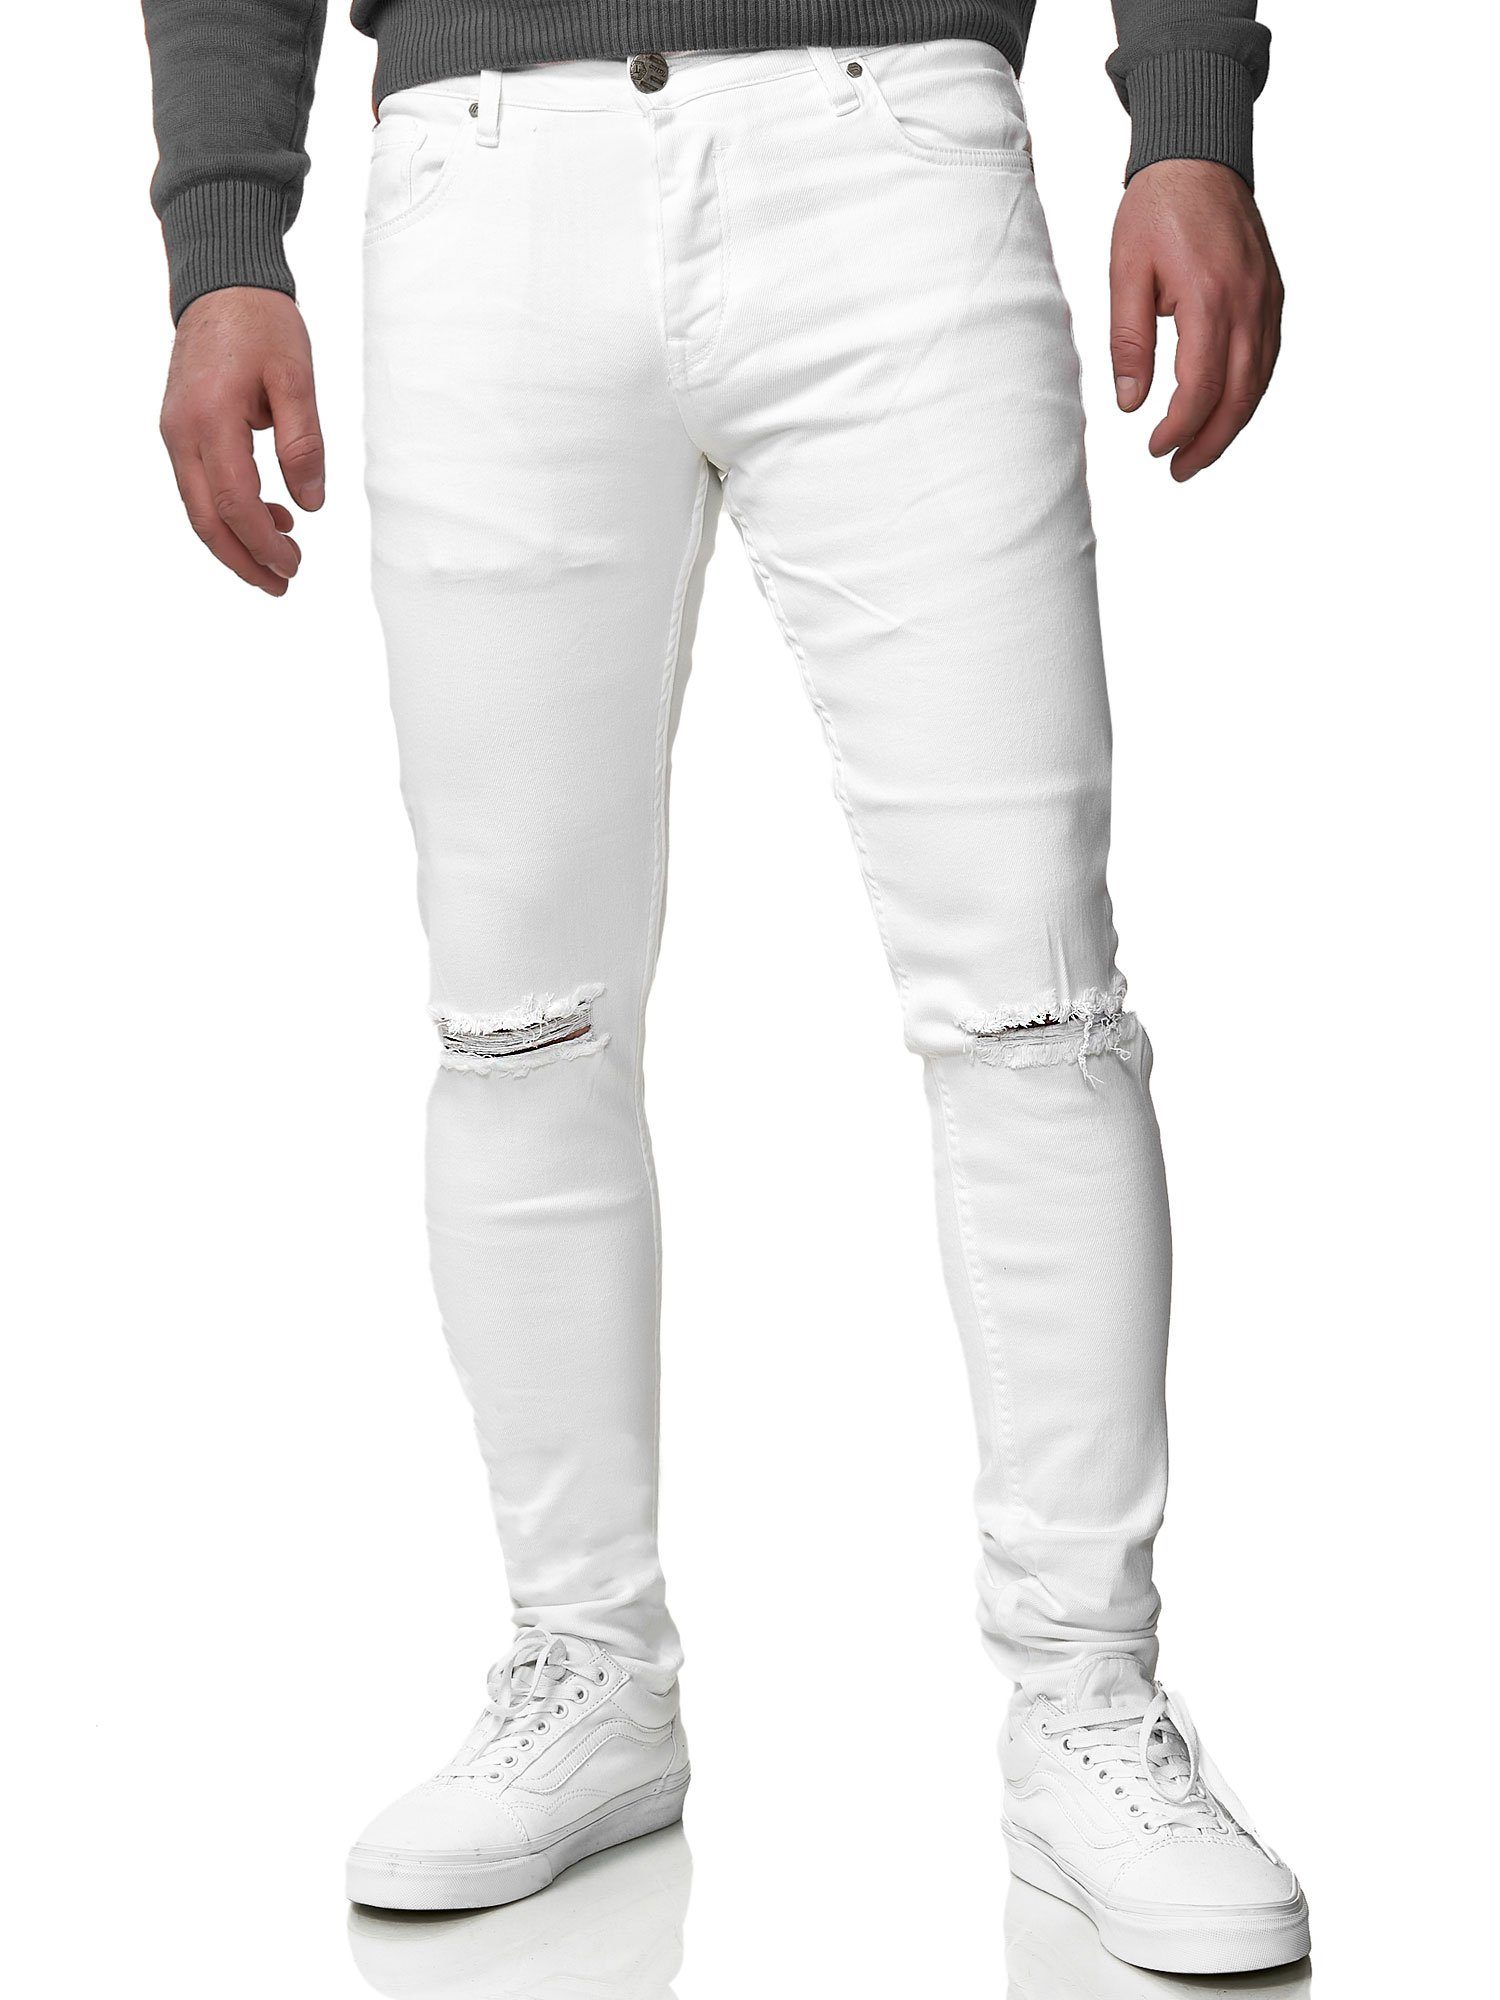 Weiße Herren Skinny-Jeans online kaufen | OTTO